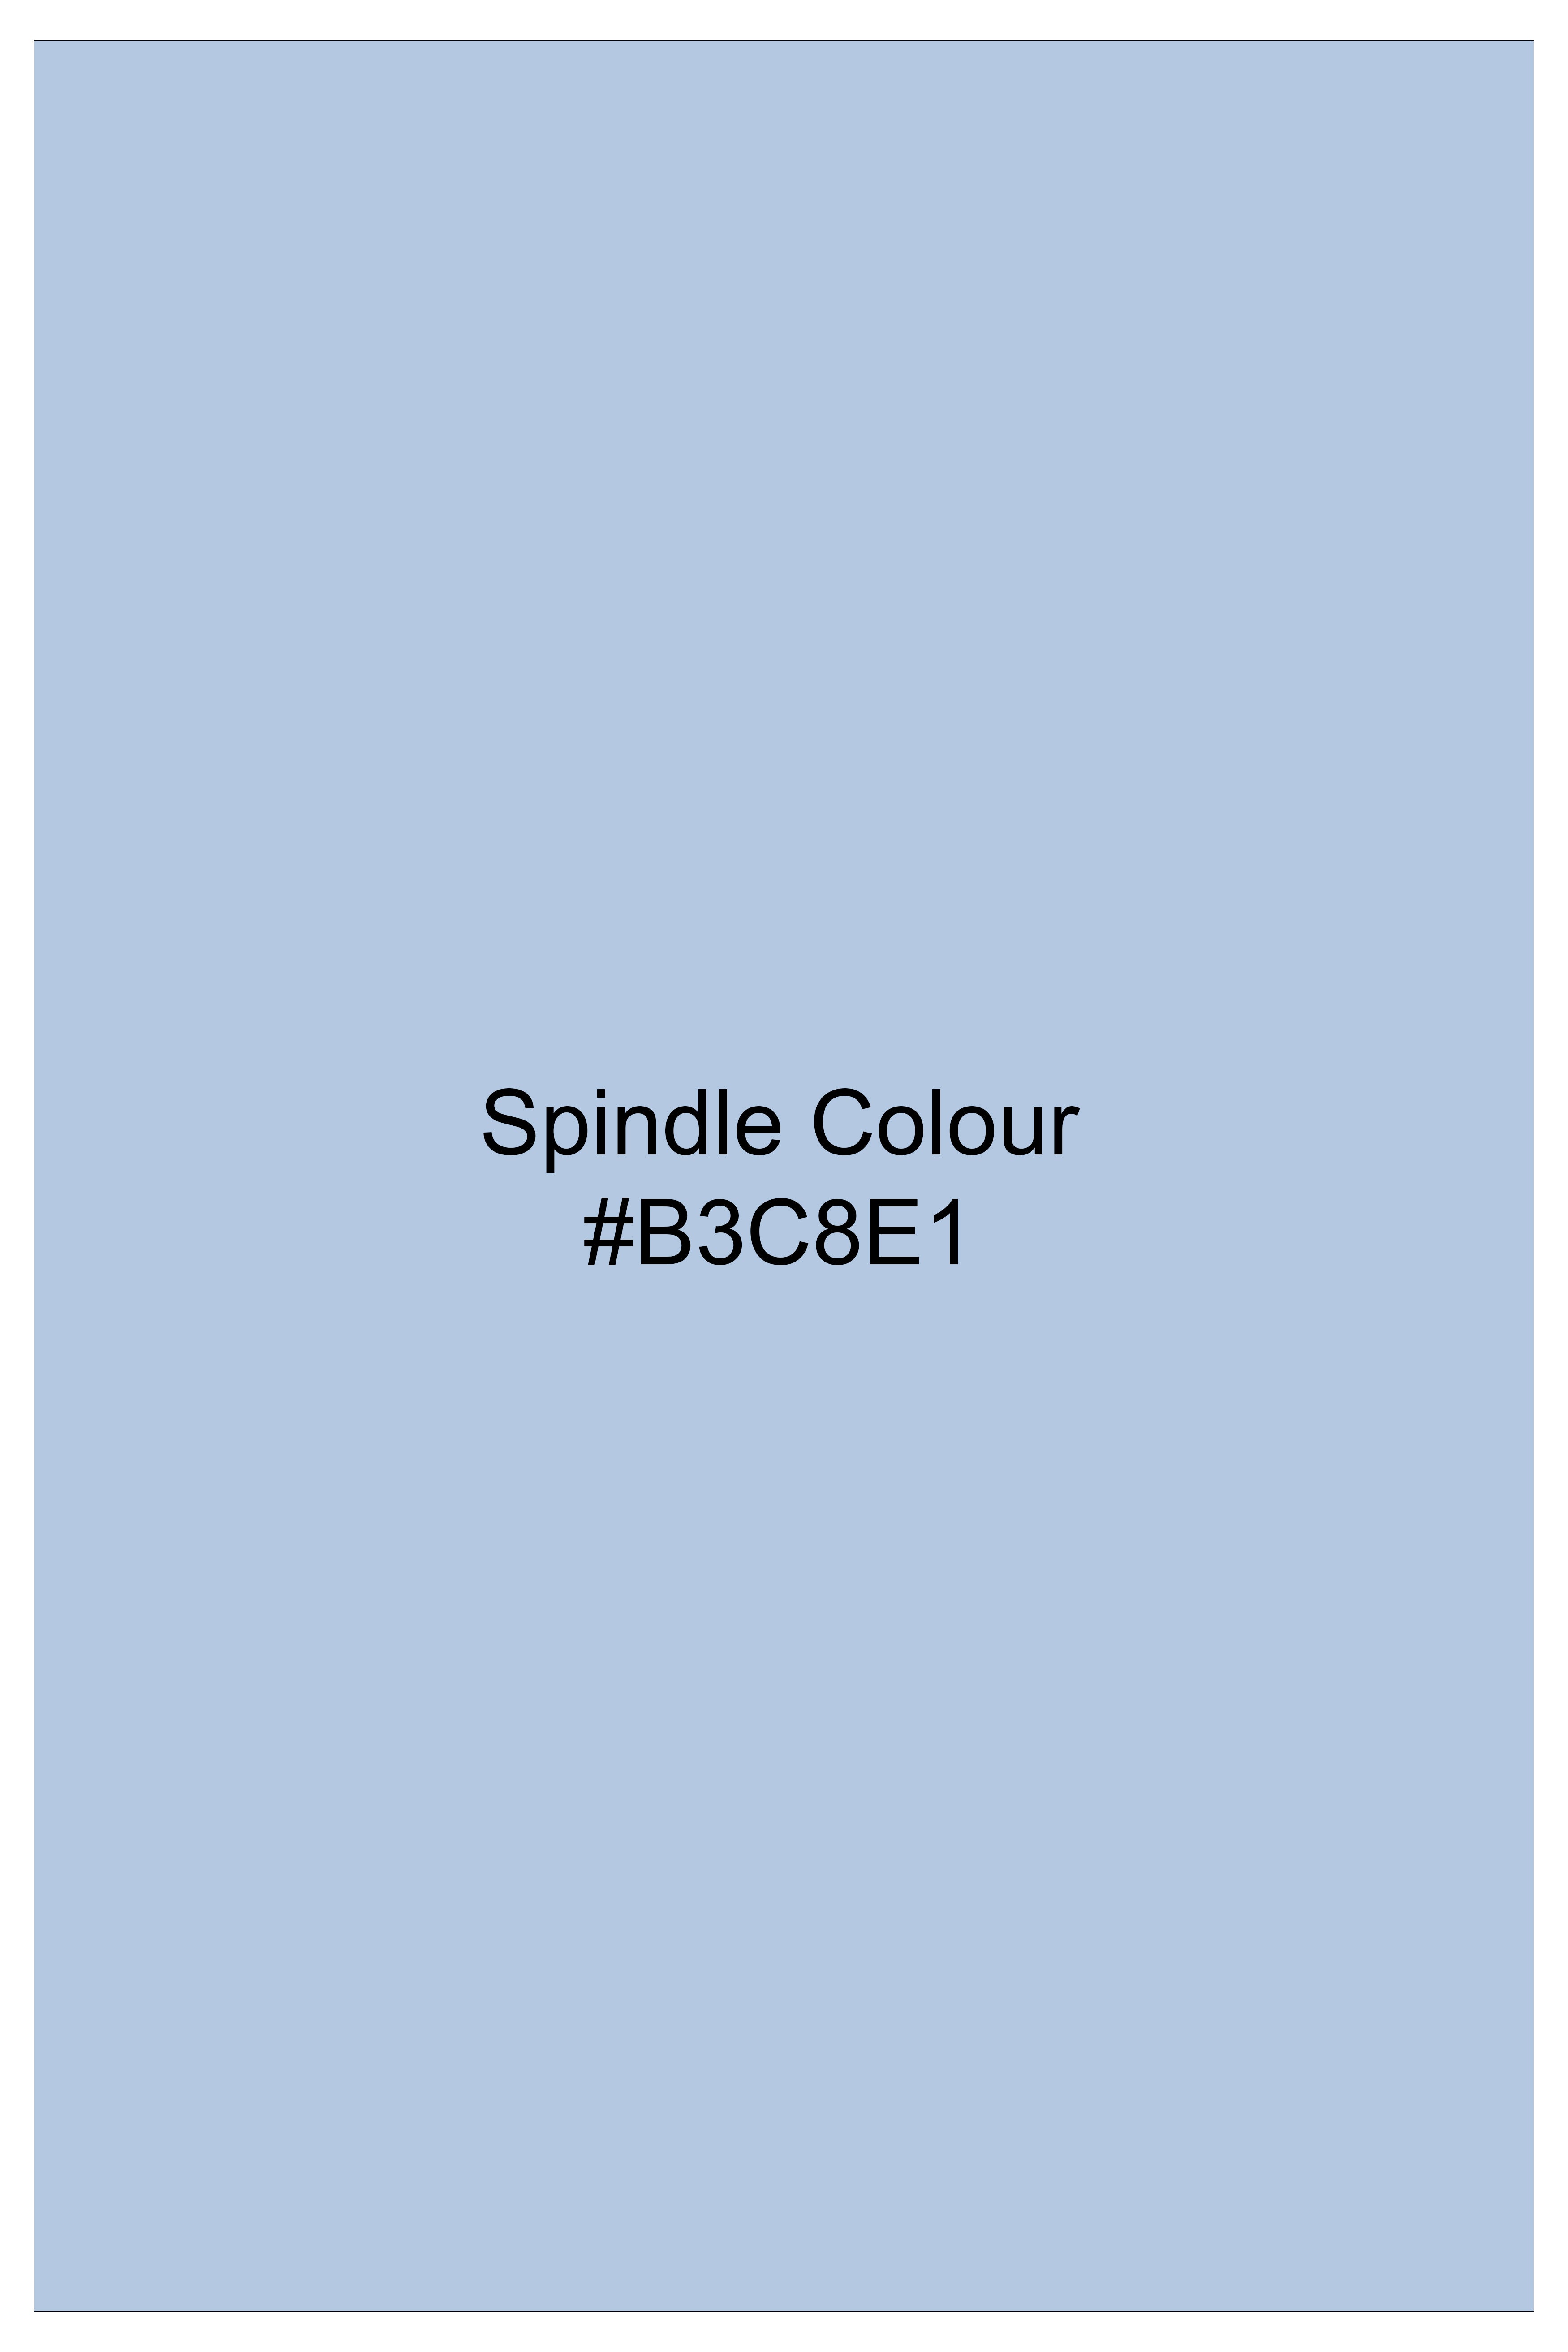 Spindle Blue Multicolor Parrots Printed Poplin Cotton Shirt